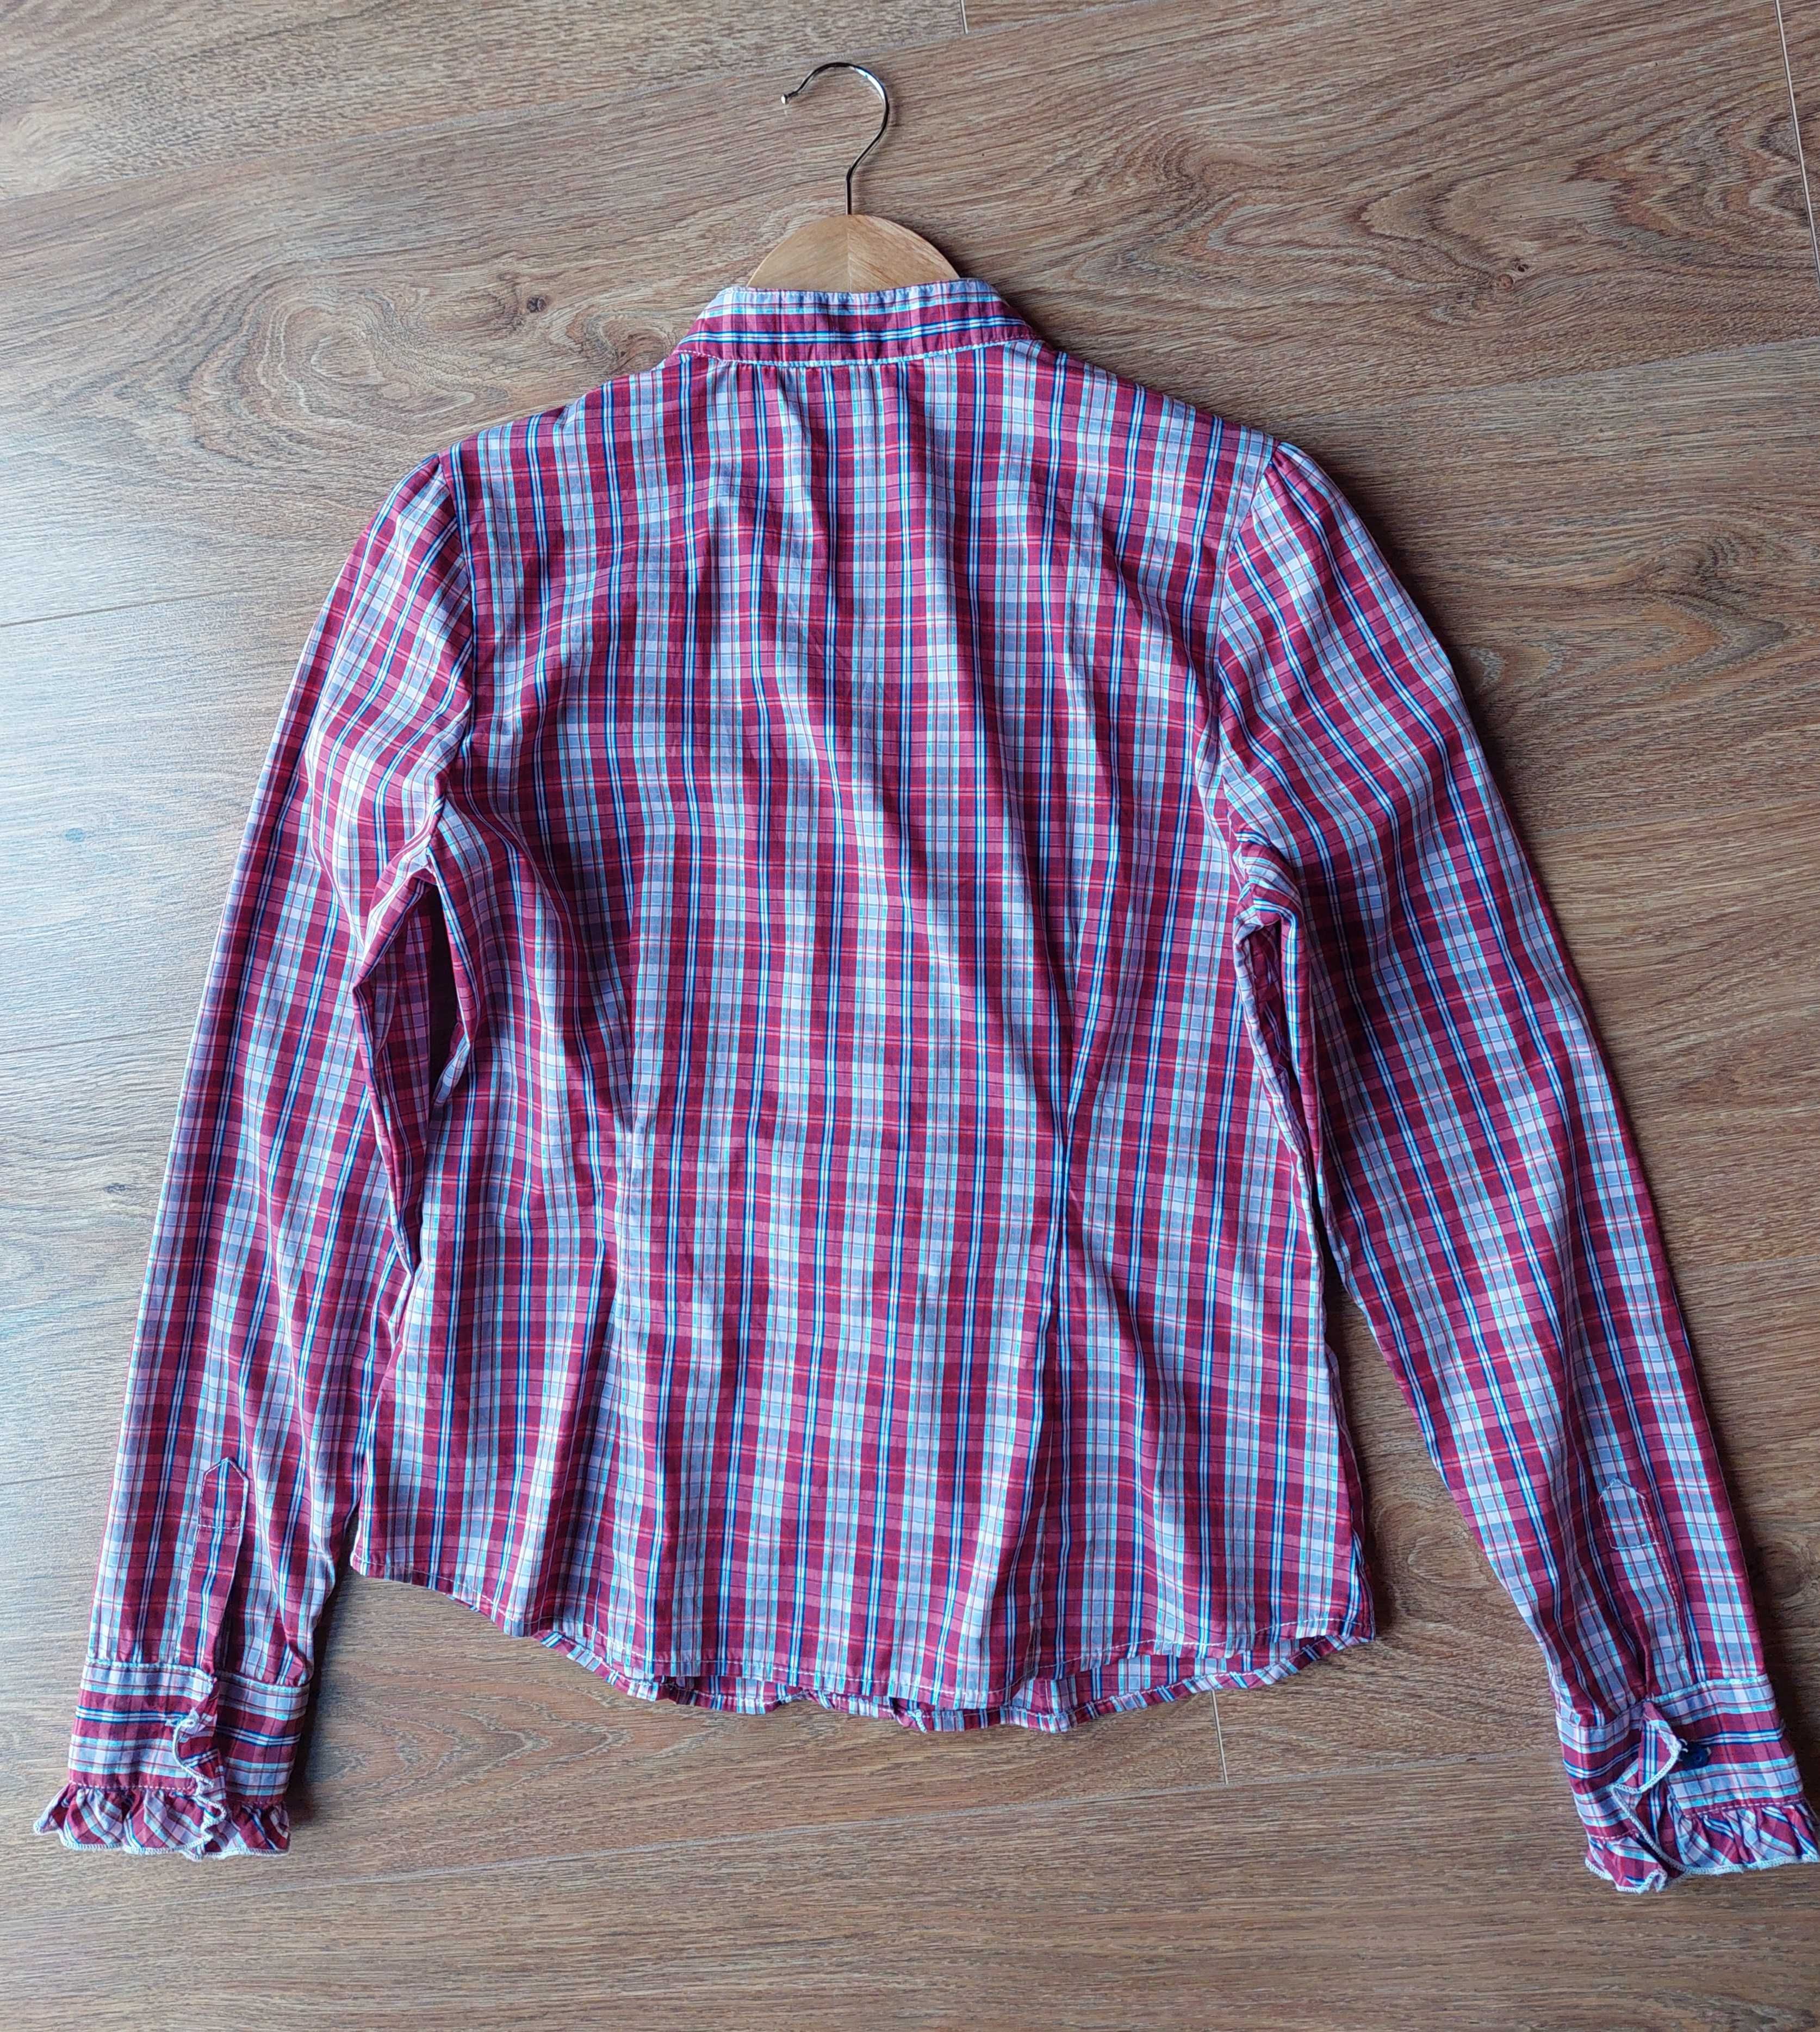 Bluzka koszula w kratkę czerwona różowa M 38 Carry z żabotem falbanką